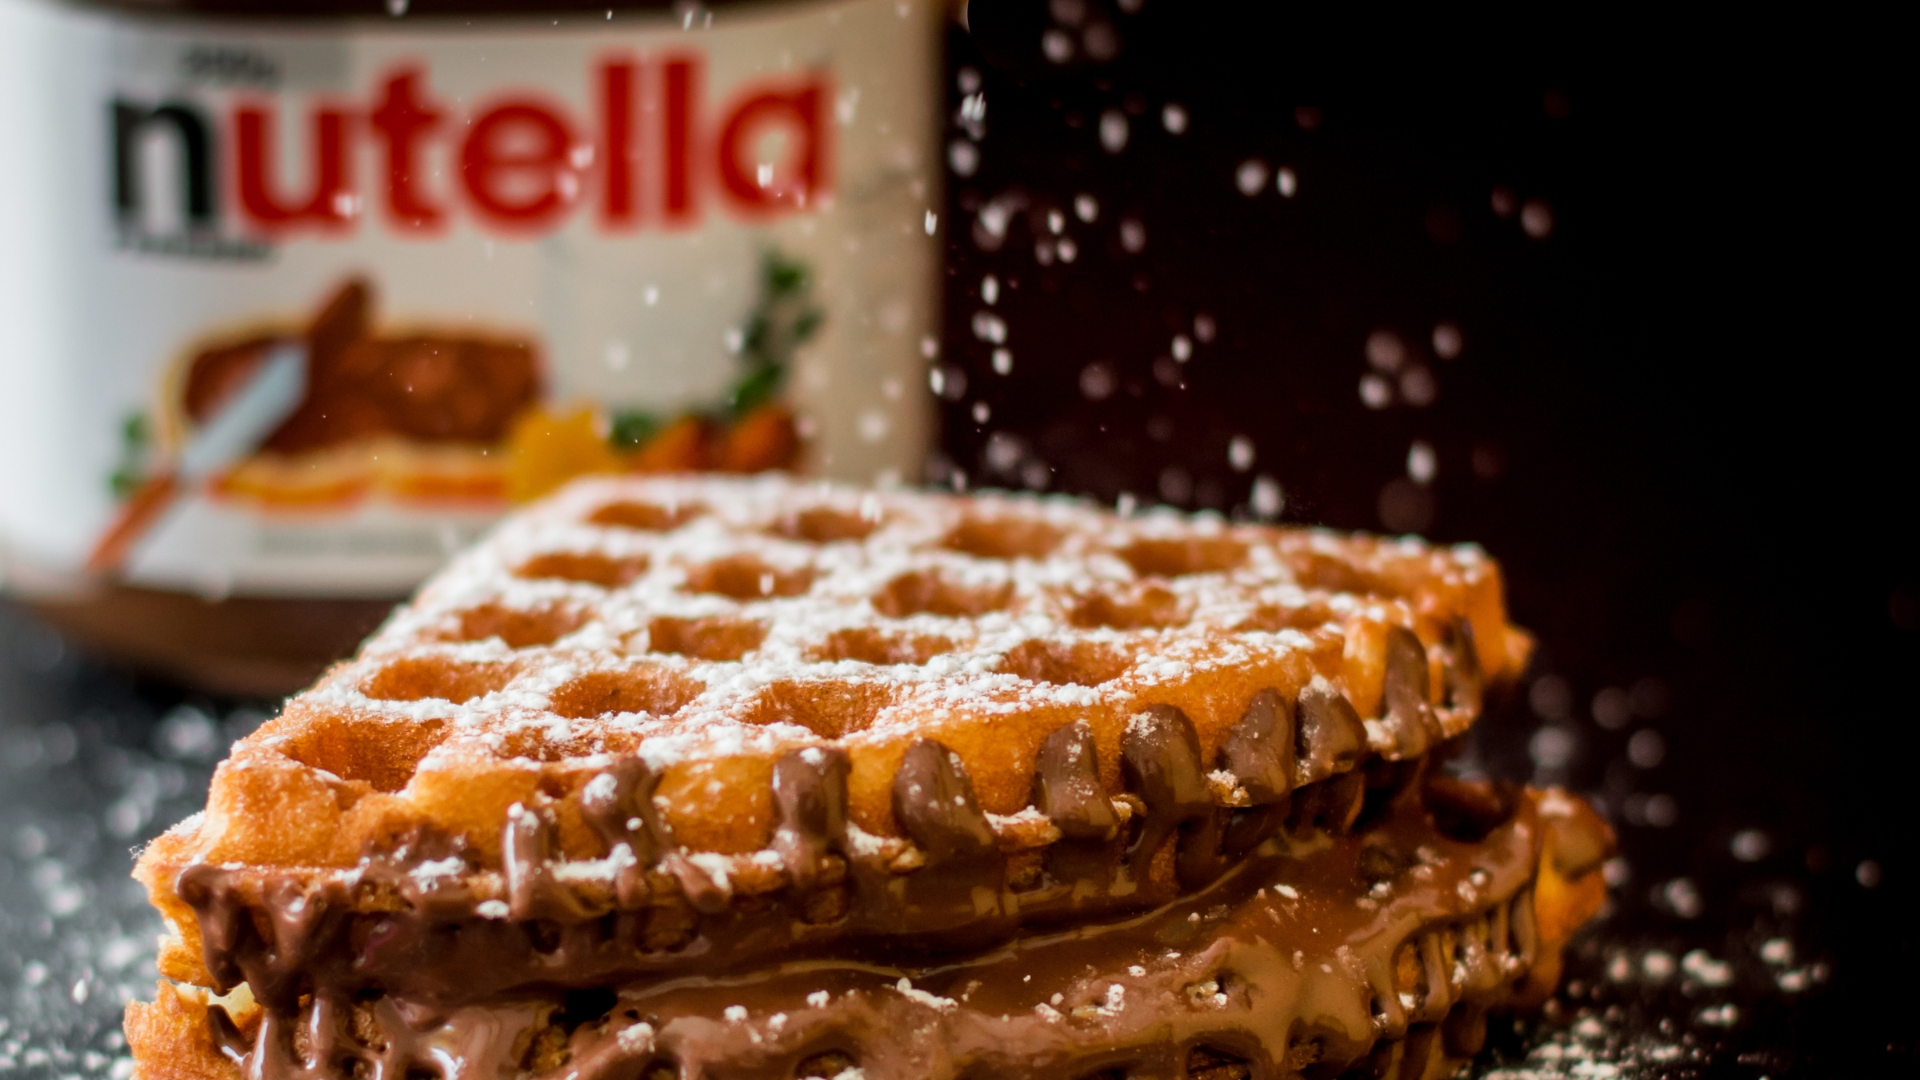 Dia da Nutella: história, receitas e lugares para degustar o creme de avelã no Brasil